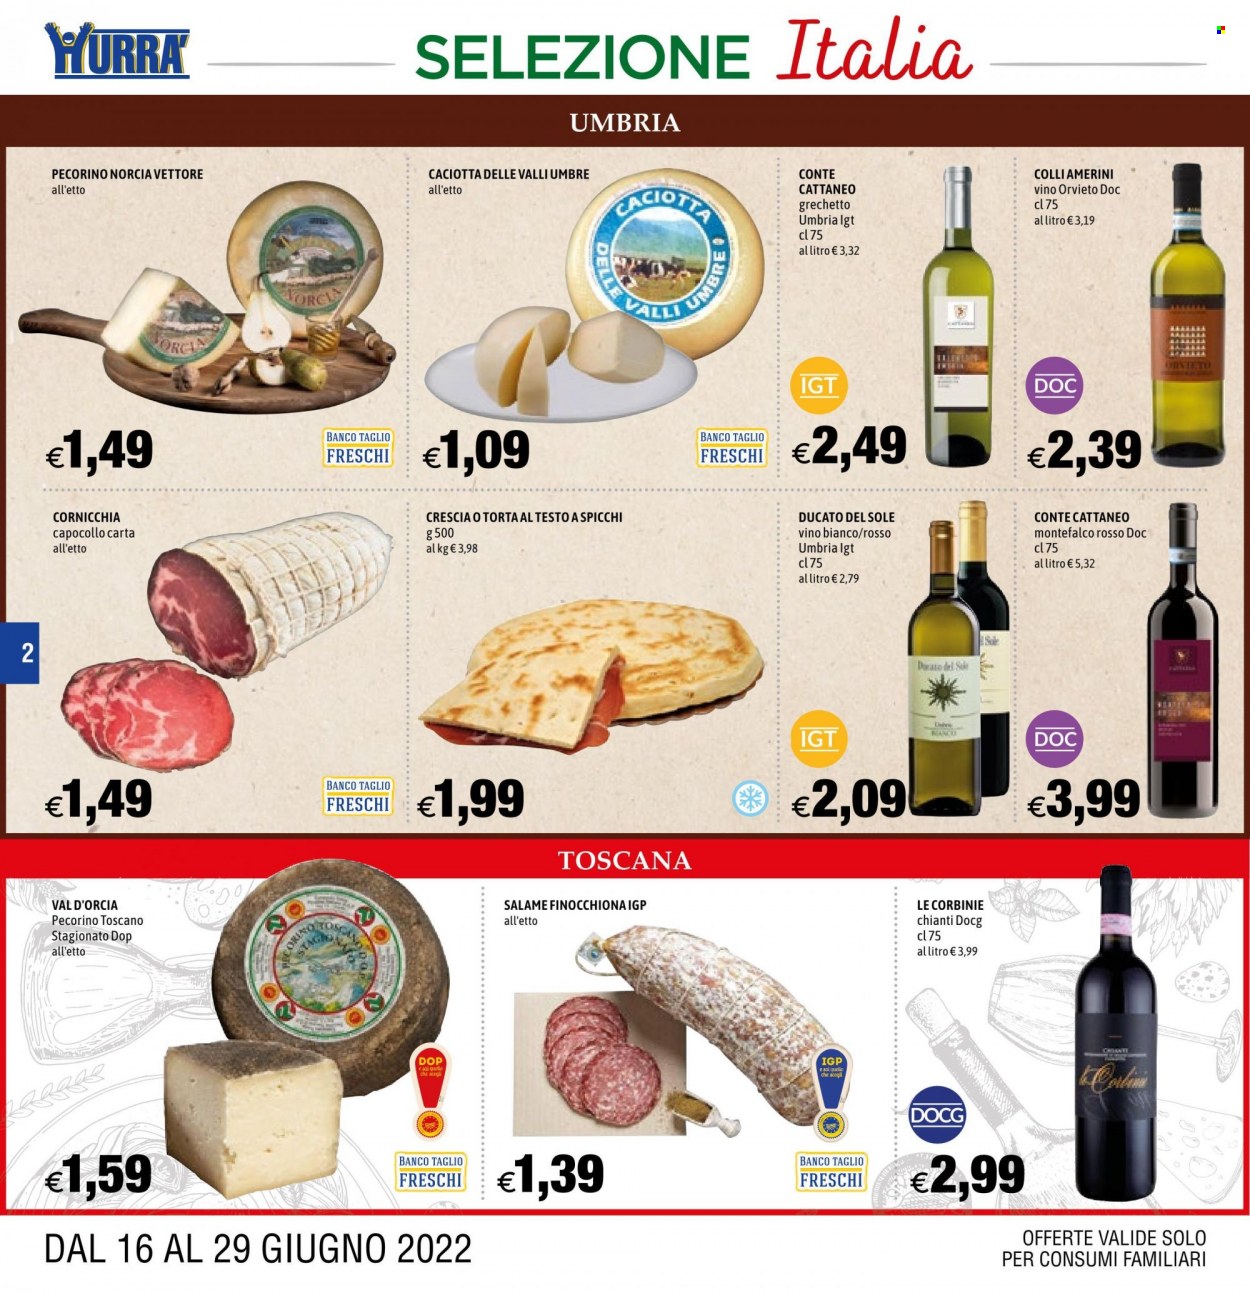 thumbnail - Volantino Hurrà Discount - 16/6/2022 - 29/6/2022 - Prodotti in offerta - torta, capocollo, salame, caciotta, Pecorino Toscano, vino bianco, Chianti, vino. Pagina 2.